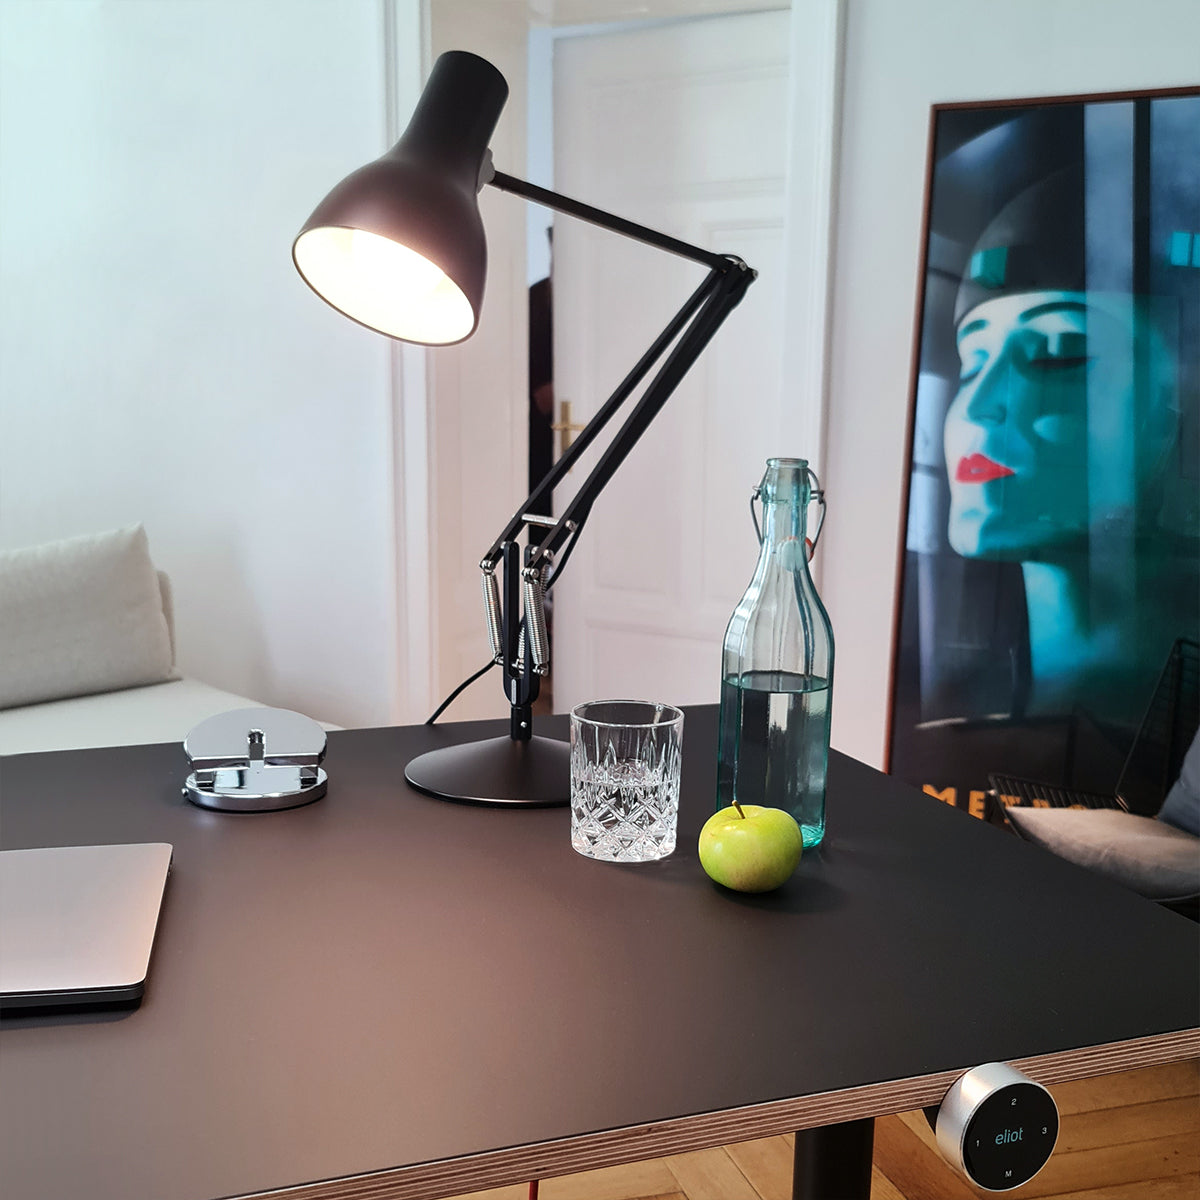 Anglepoise Schreibtischleuchte auf Eliot Schreibtisch, daneben Wasser und ein Apfel